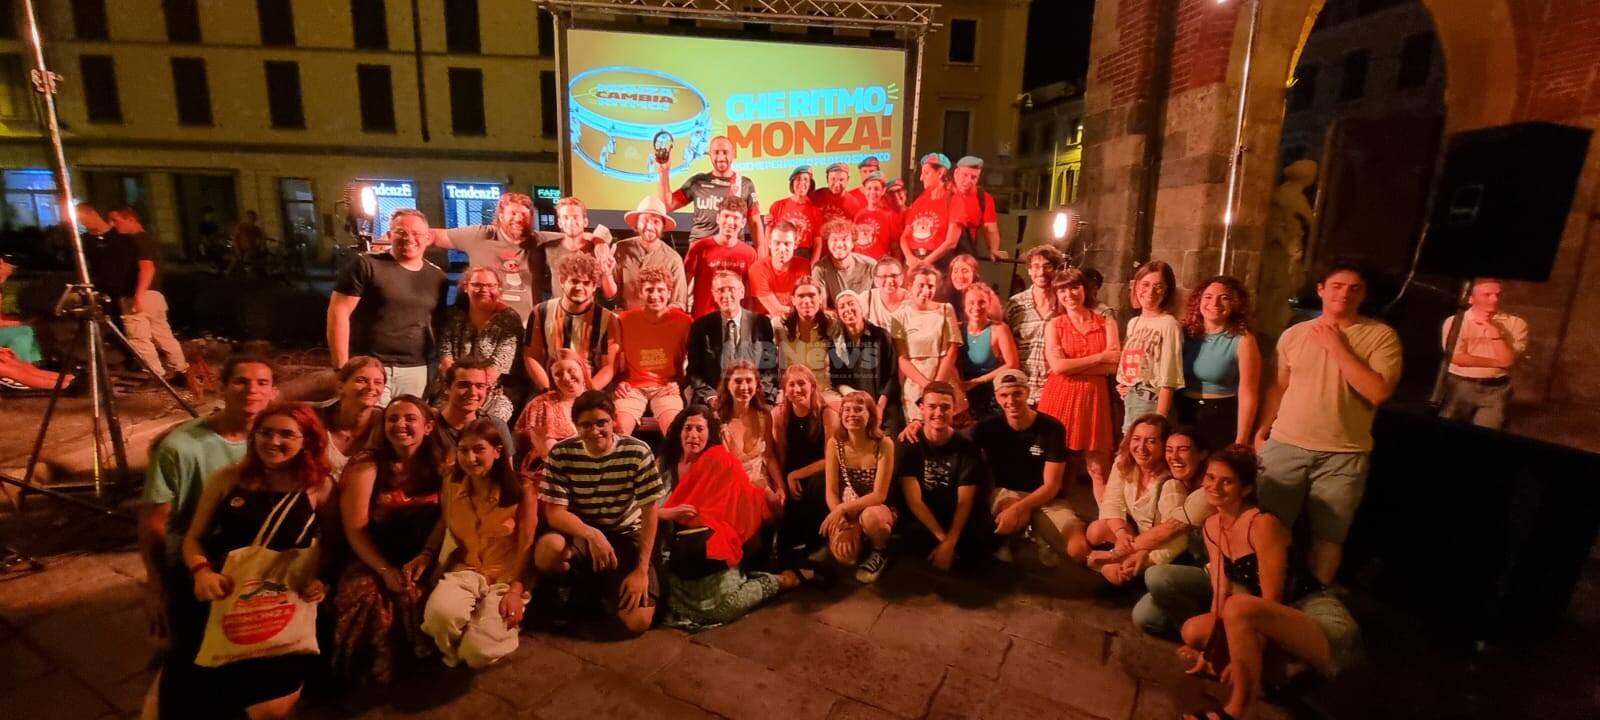 Paolo Pilotto è il nuovo sindaco di Monza: i festeggiamenti